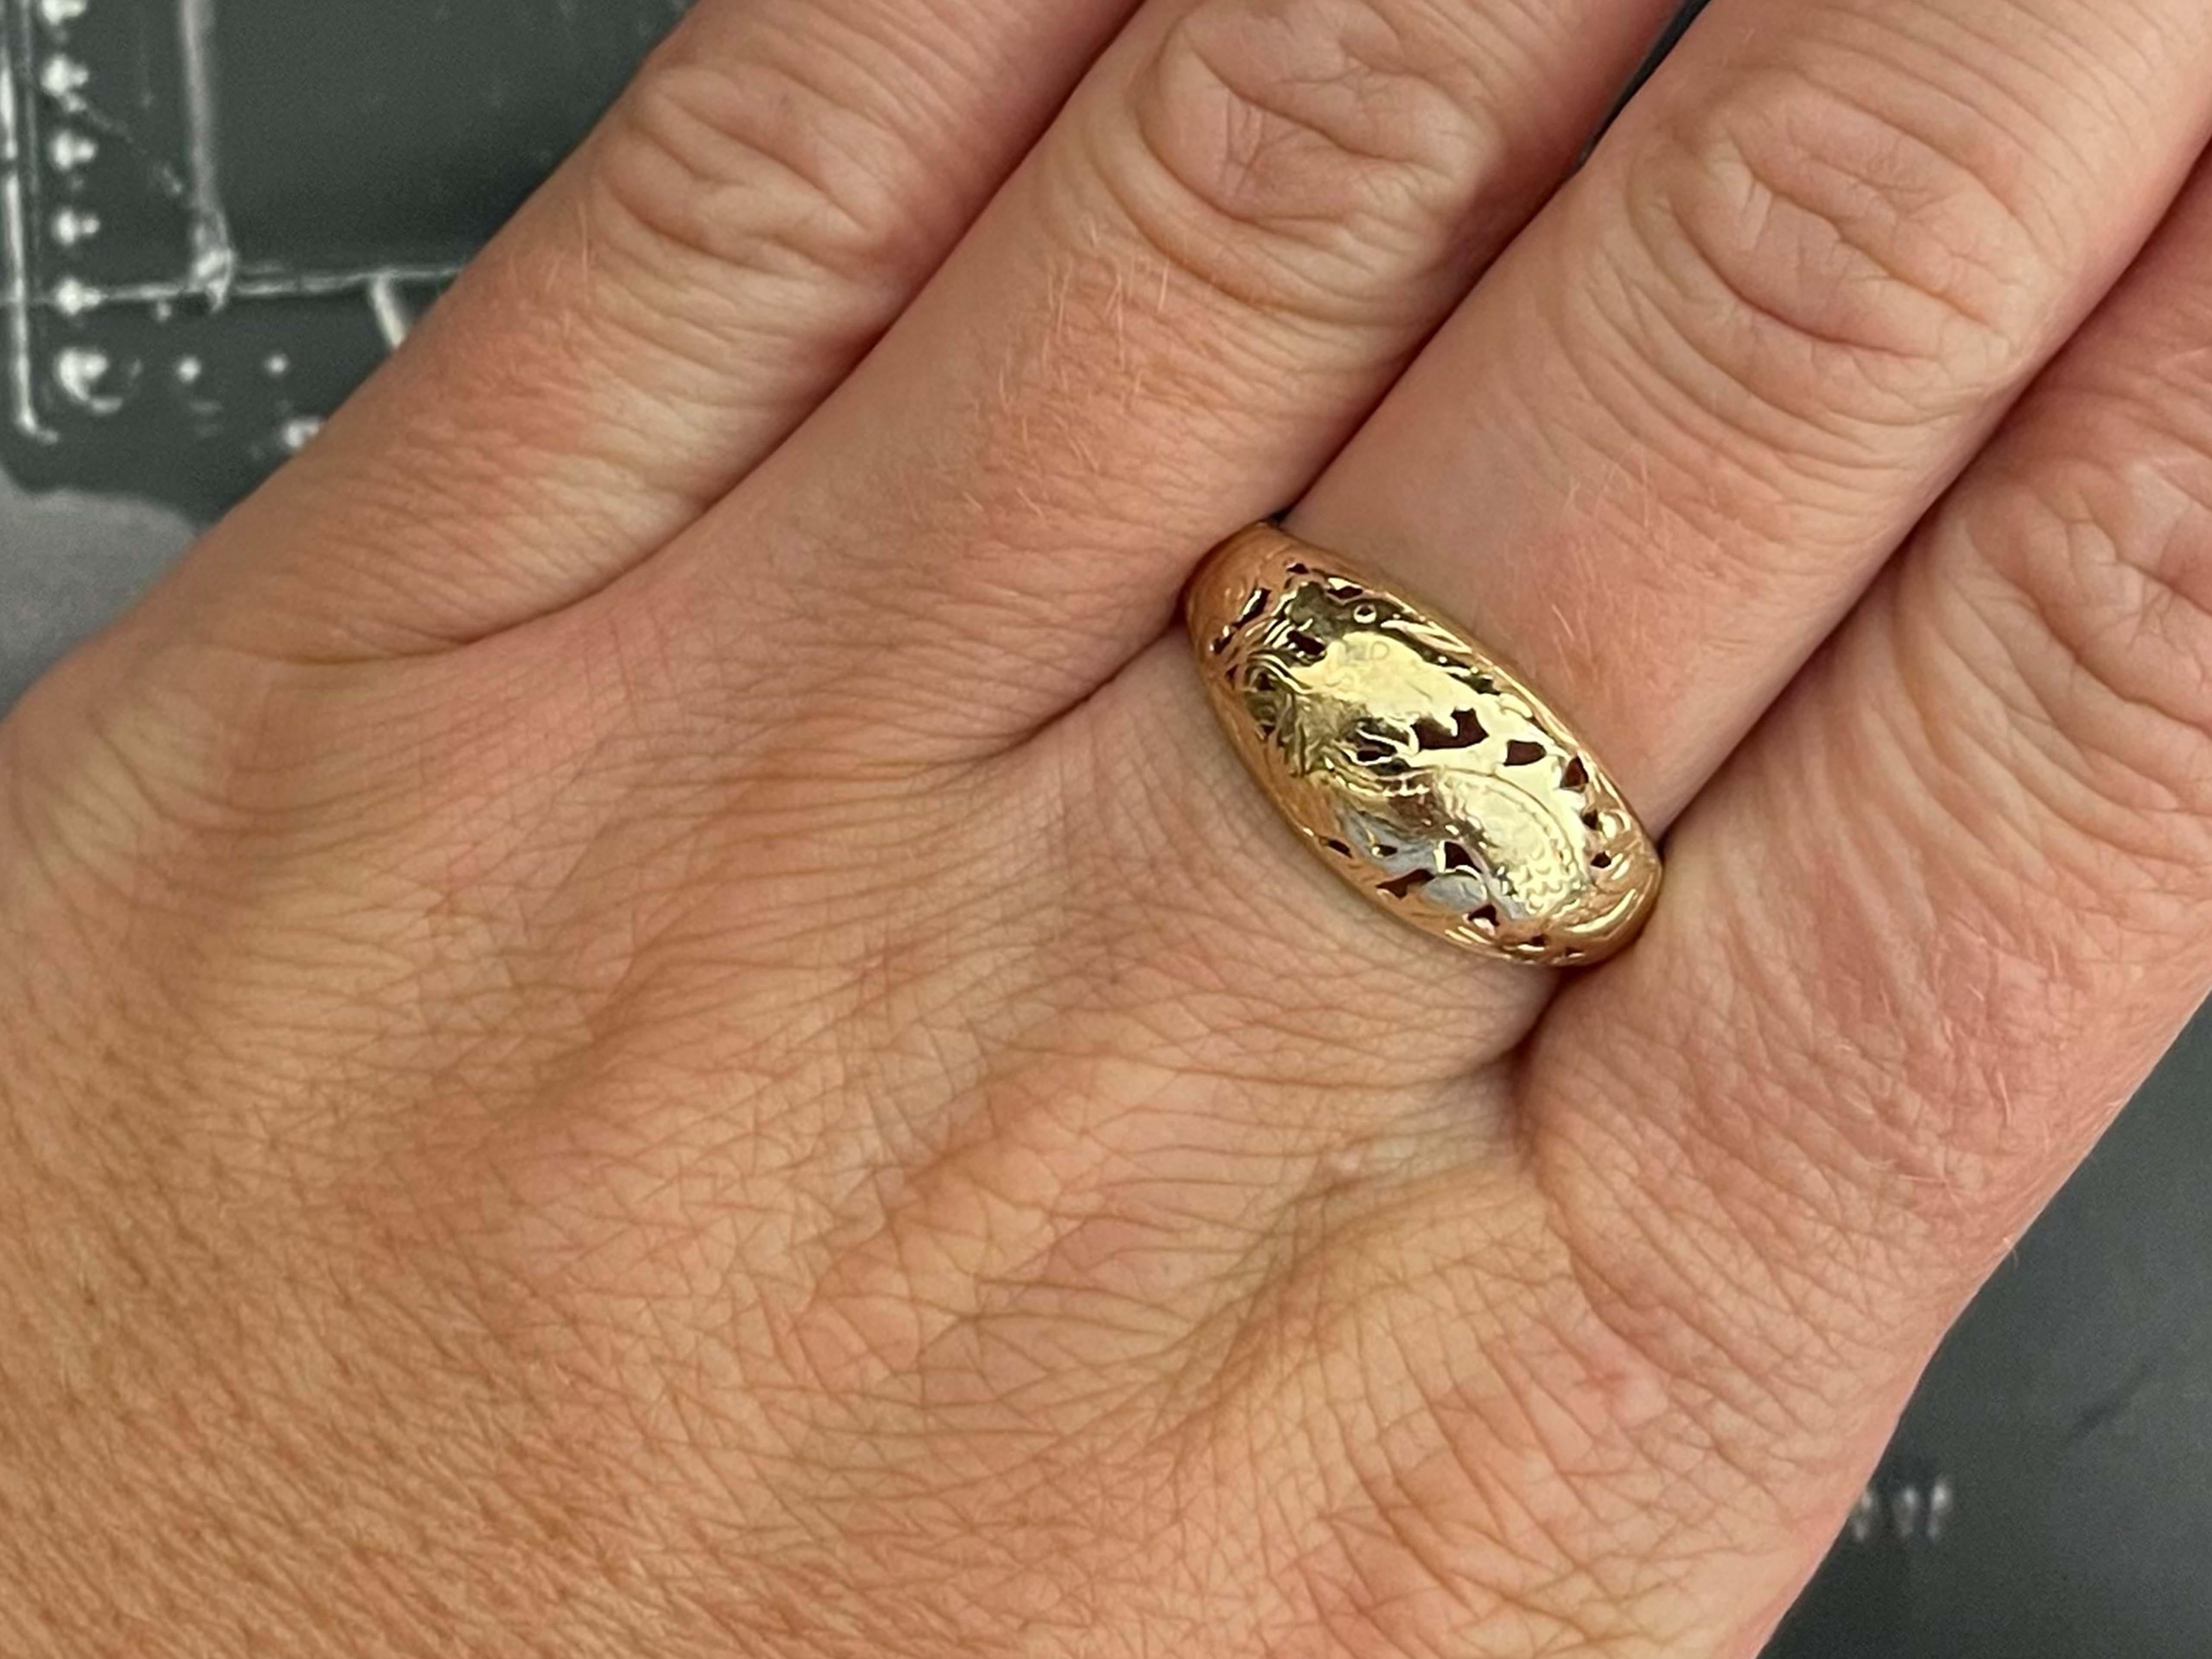 Ring Spezifikationen:

Designer: Ming's

Metall: 14k Gelbgold

Gesamtgewicht: 3,5 Gramm

Ringgröße: 9 (größenverstellbar)

Gestempelt: 